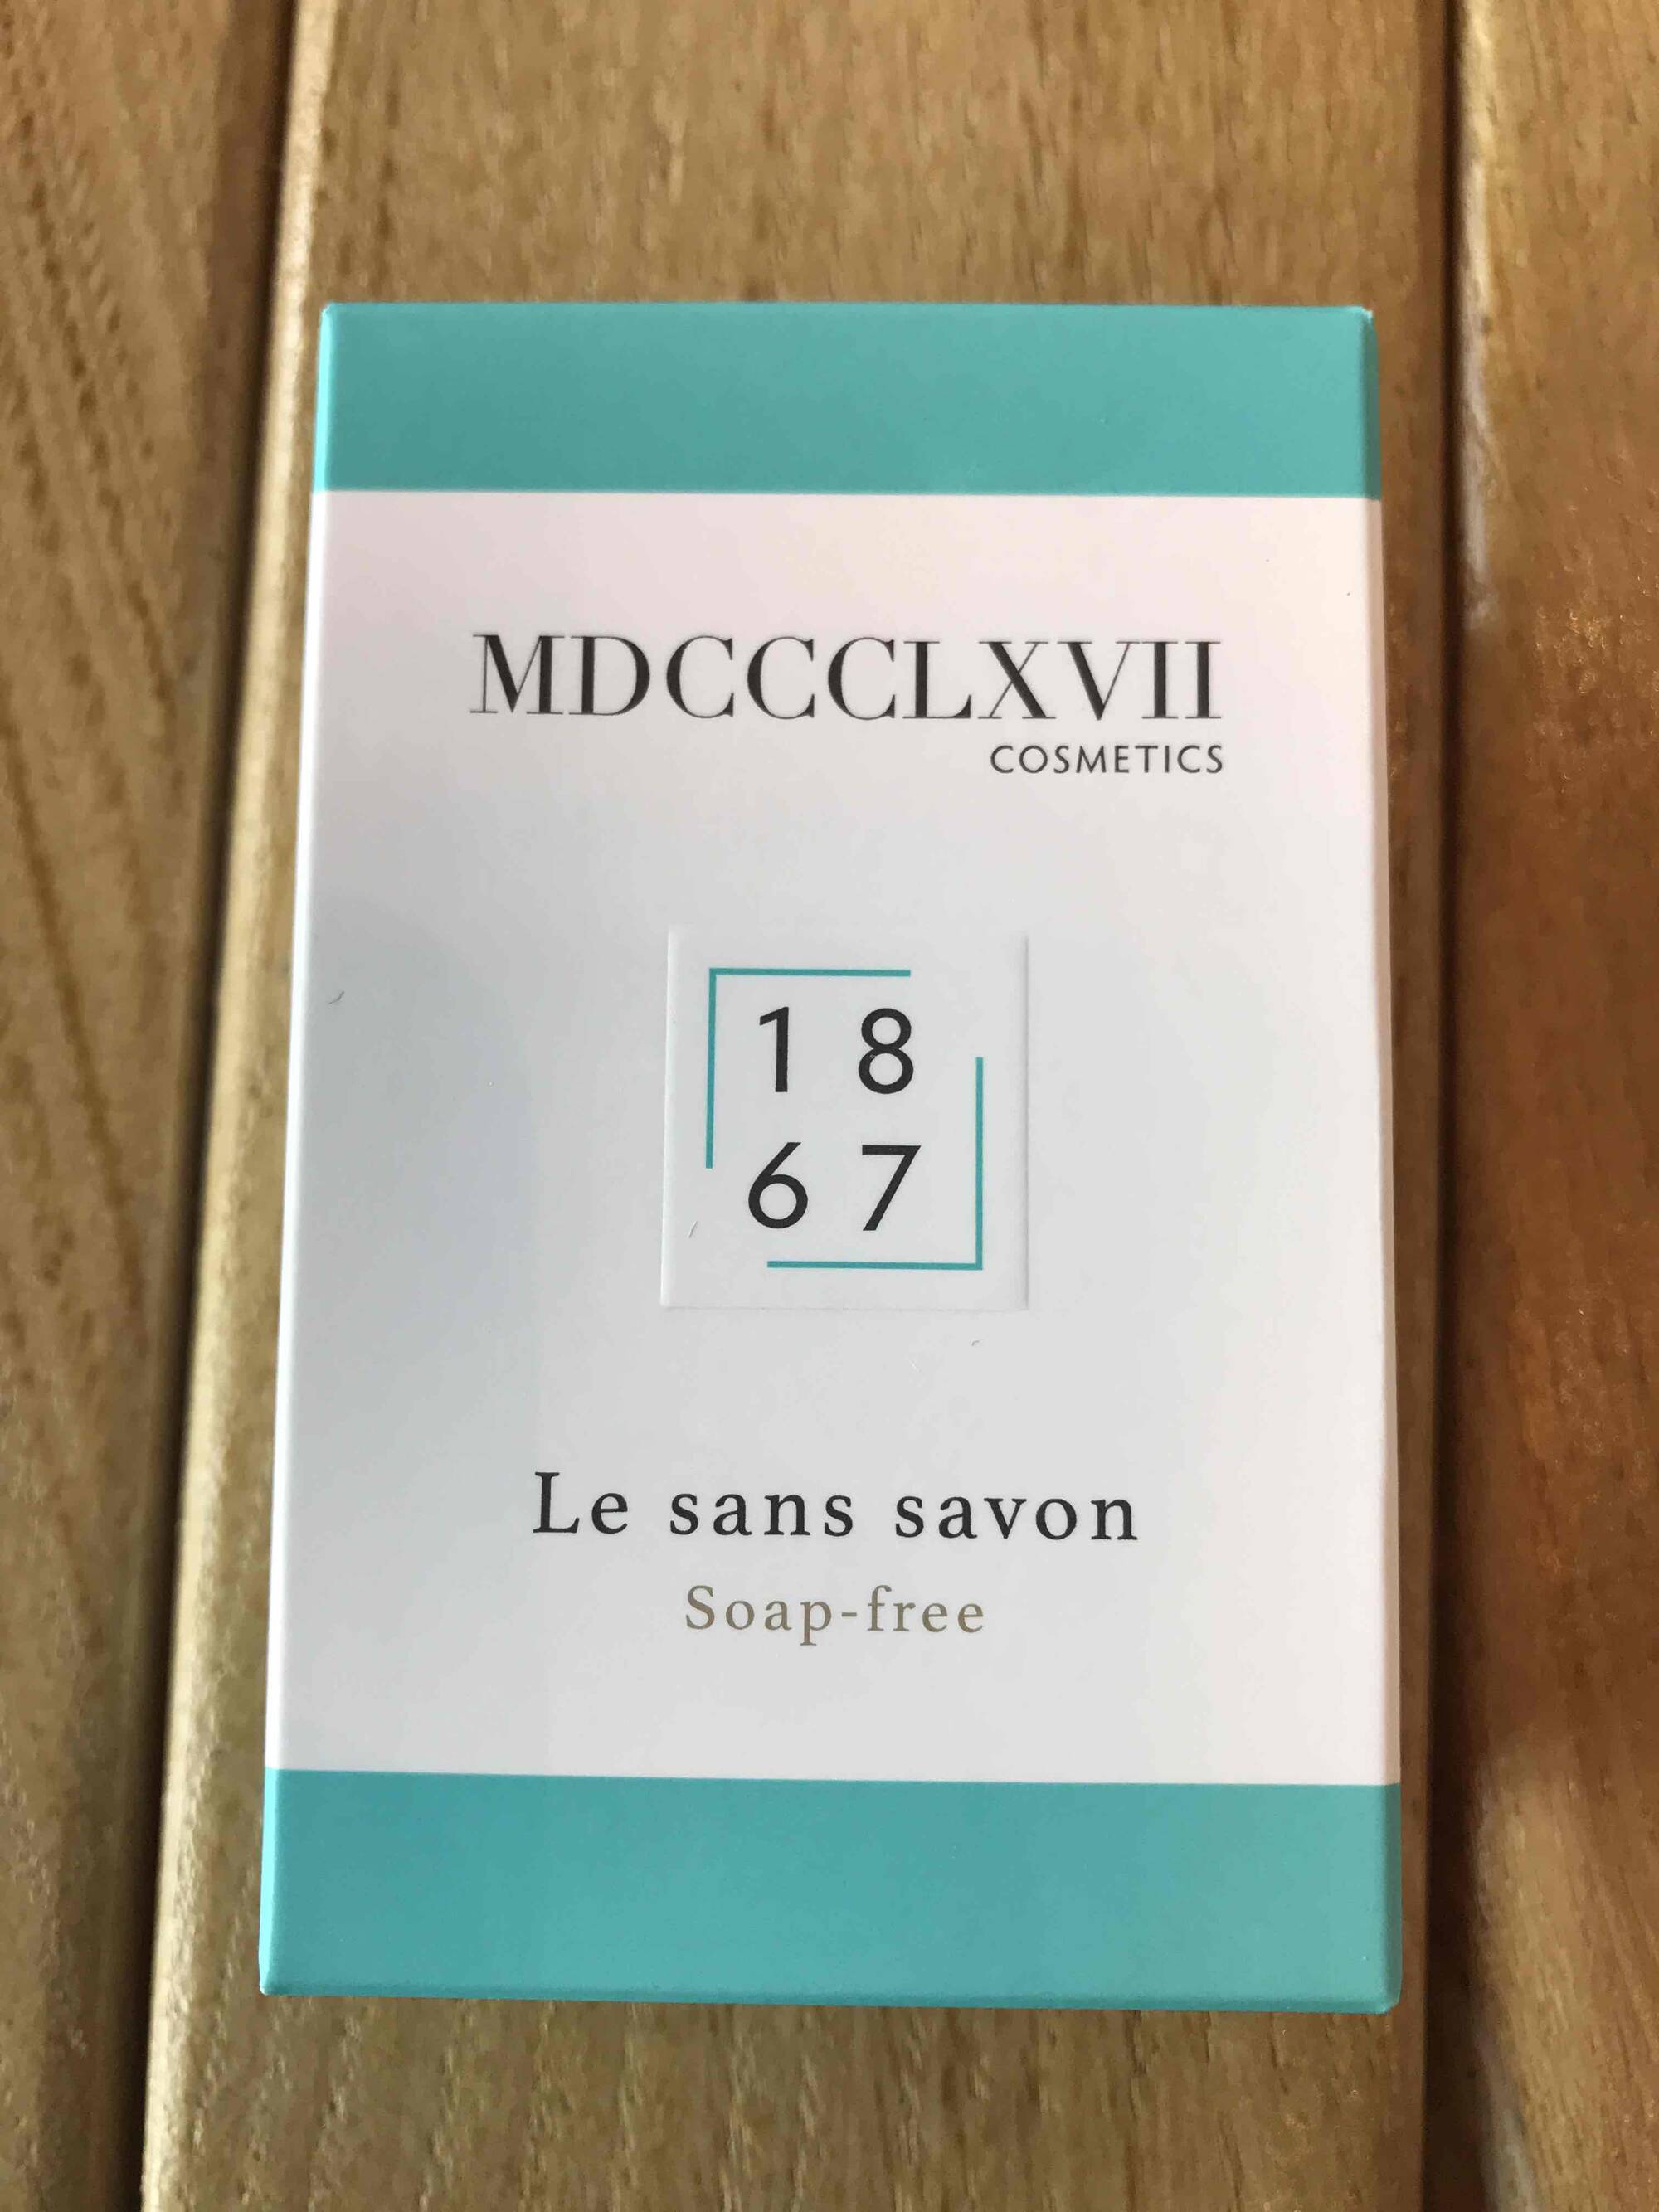 MDCCCLXVII COSMETICS - 1867 - Le sans savon